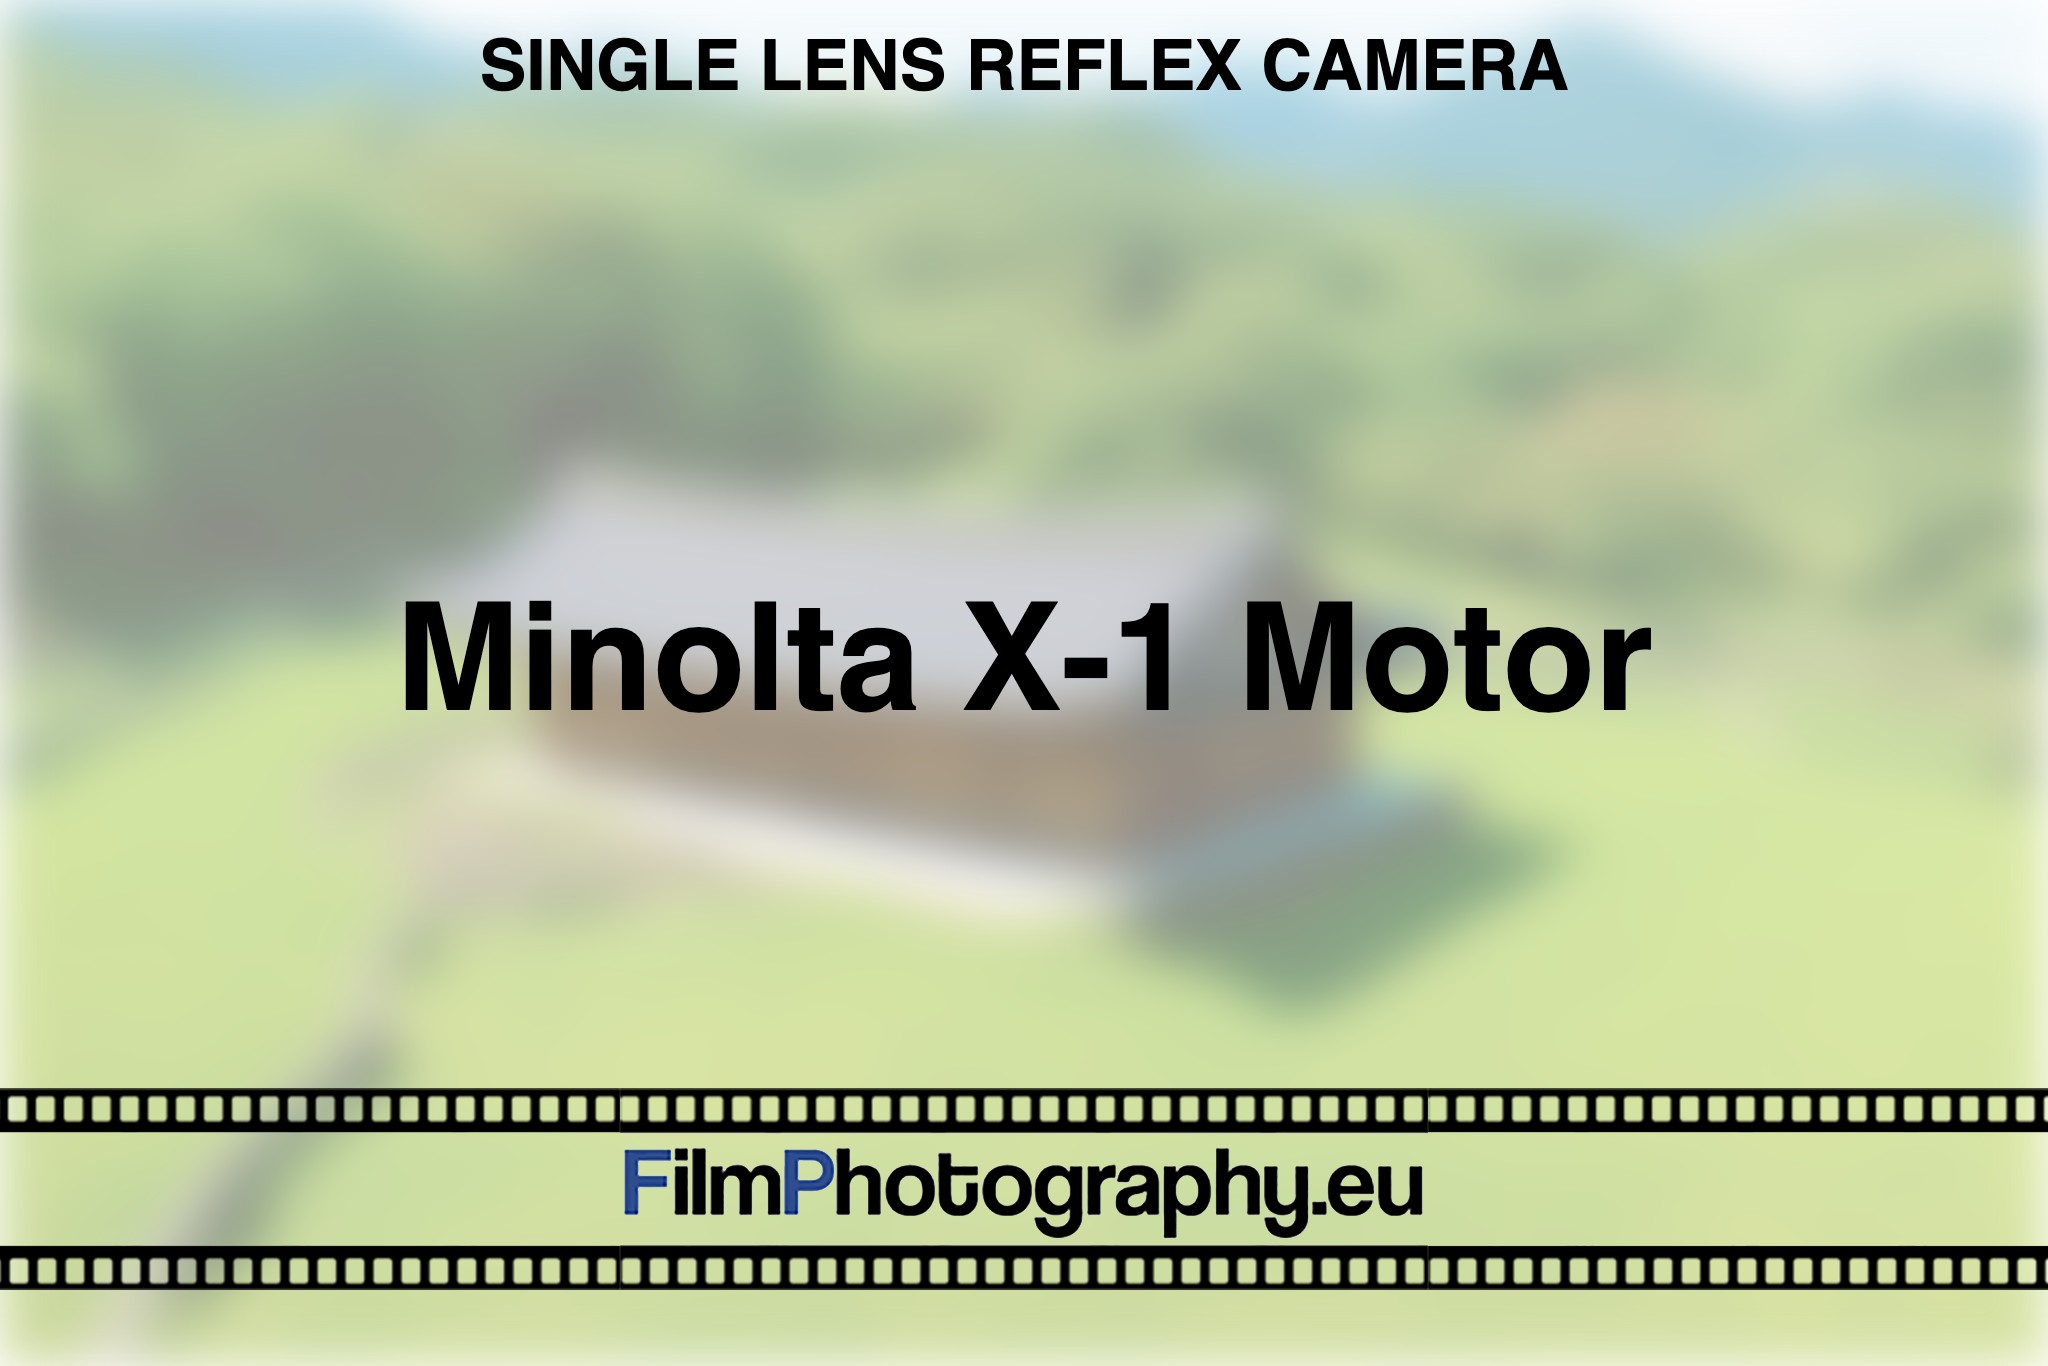 minolta-x-1-motor-single-lens-reflex-camera-bnv